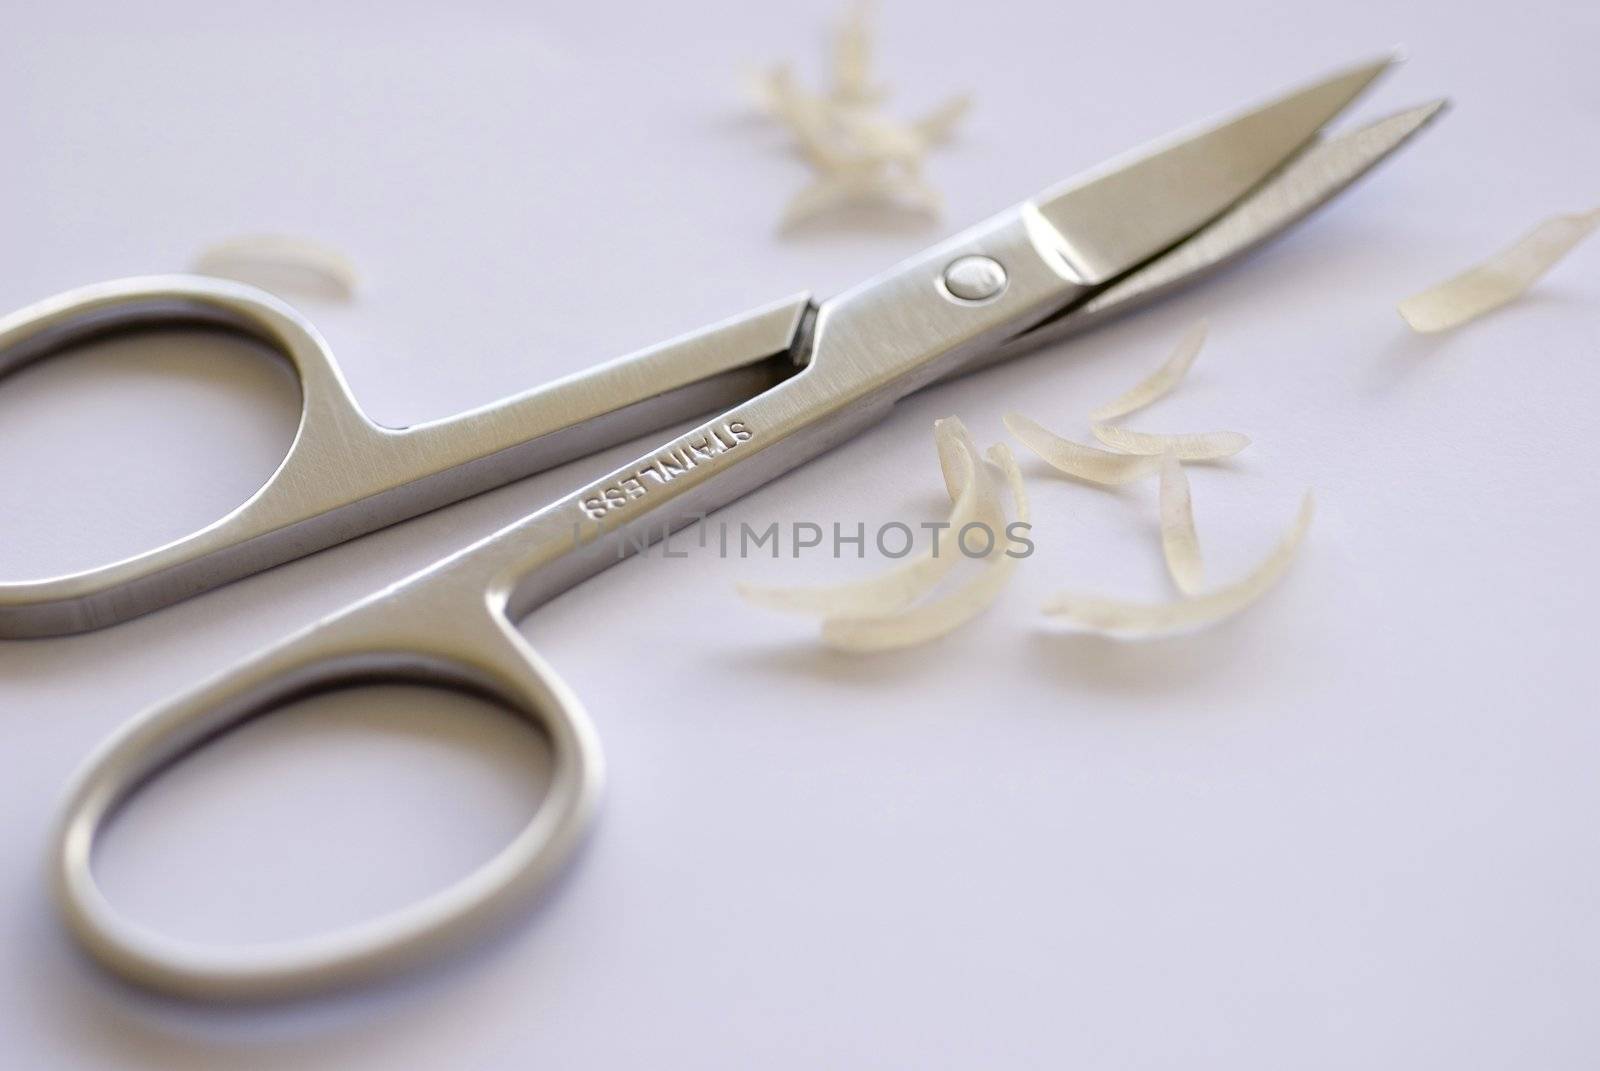 toenail scissors by stockarch